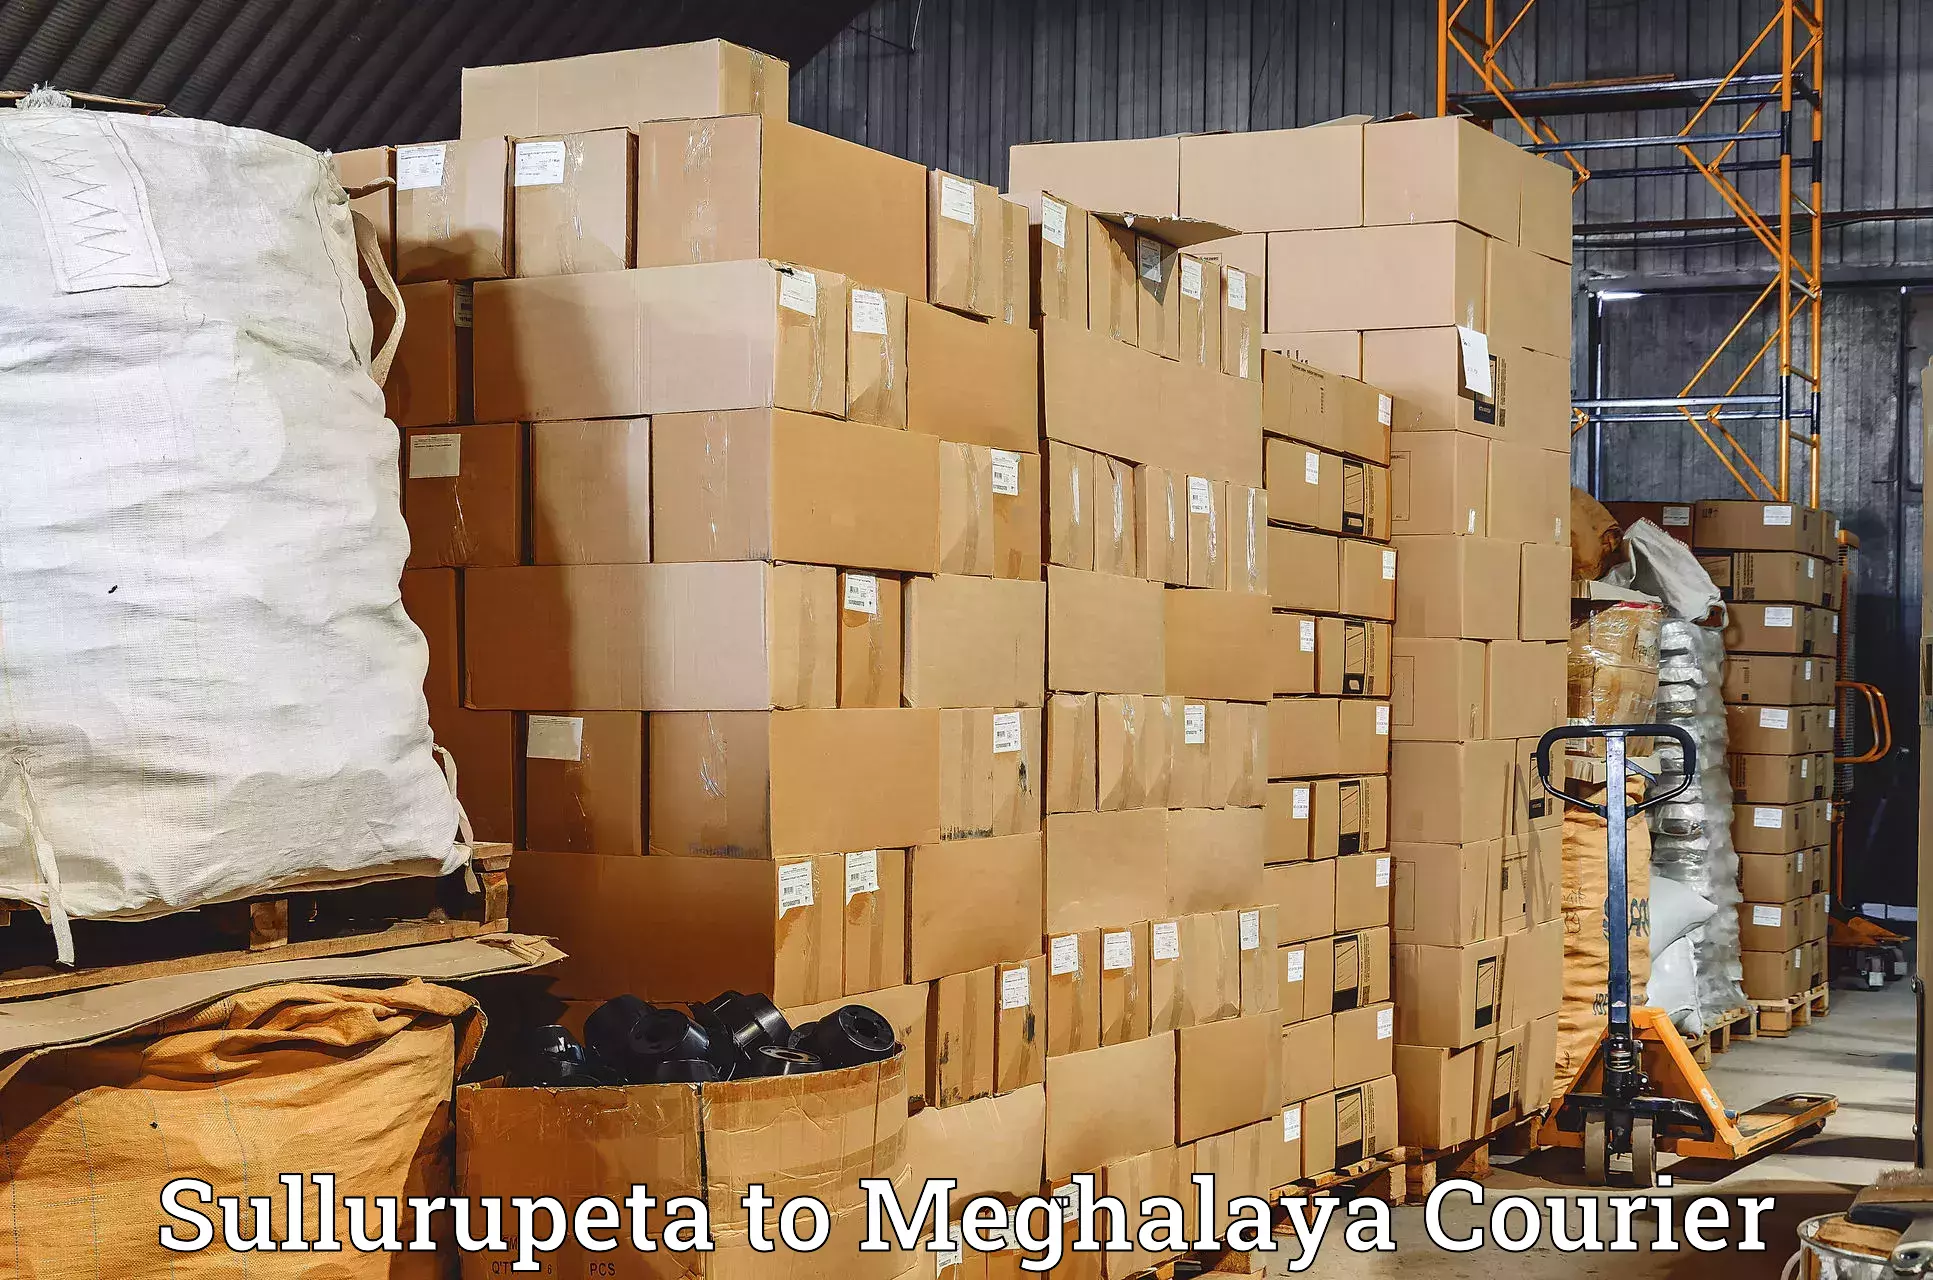 Cargo delivery service Sullurupeta to Tura